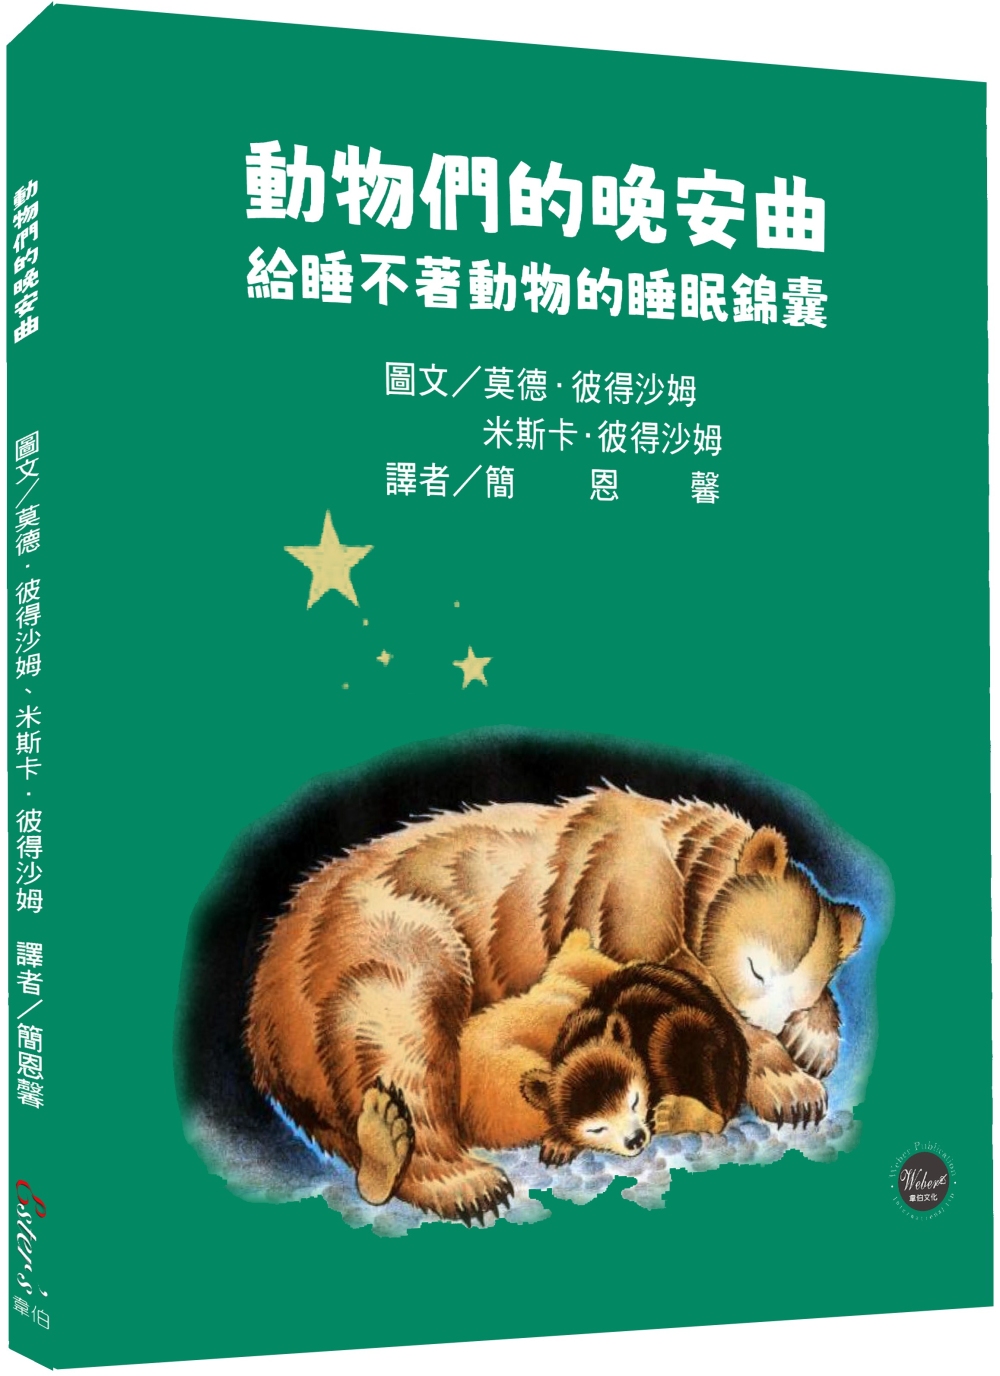 動物們的晚安曲：給睡不著動物的睡眠錦囊【溫馨的睡前故事，引領讀者進入動物世界!內附八種動物習性介紹】